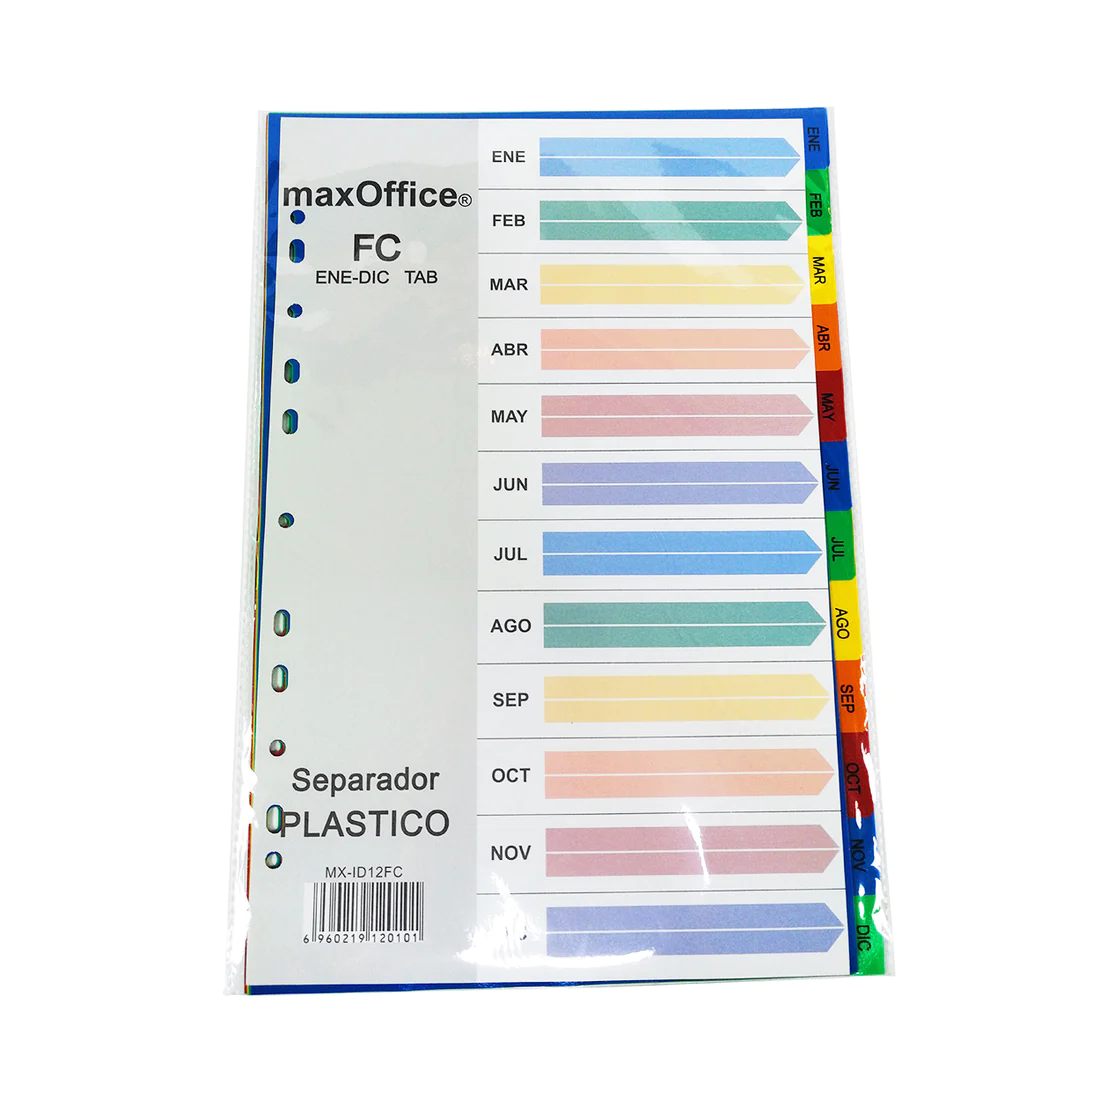 Set de 12 Separadores de Plástico Tamaño Oficio con los 12 Meses del Año, Colores Surtidos - MX-ID12FC - MaxOffice